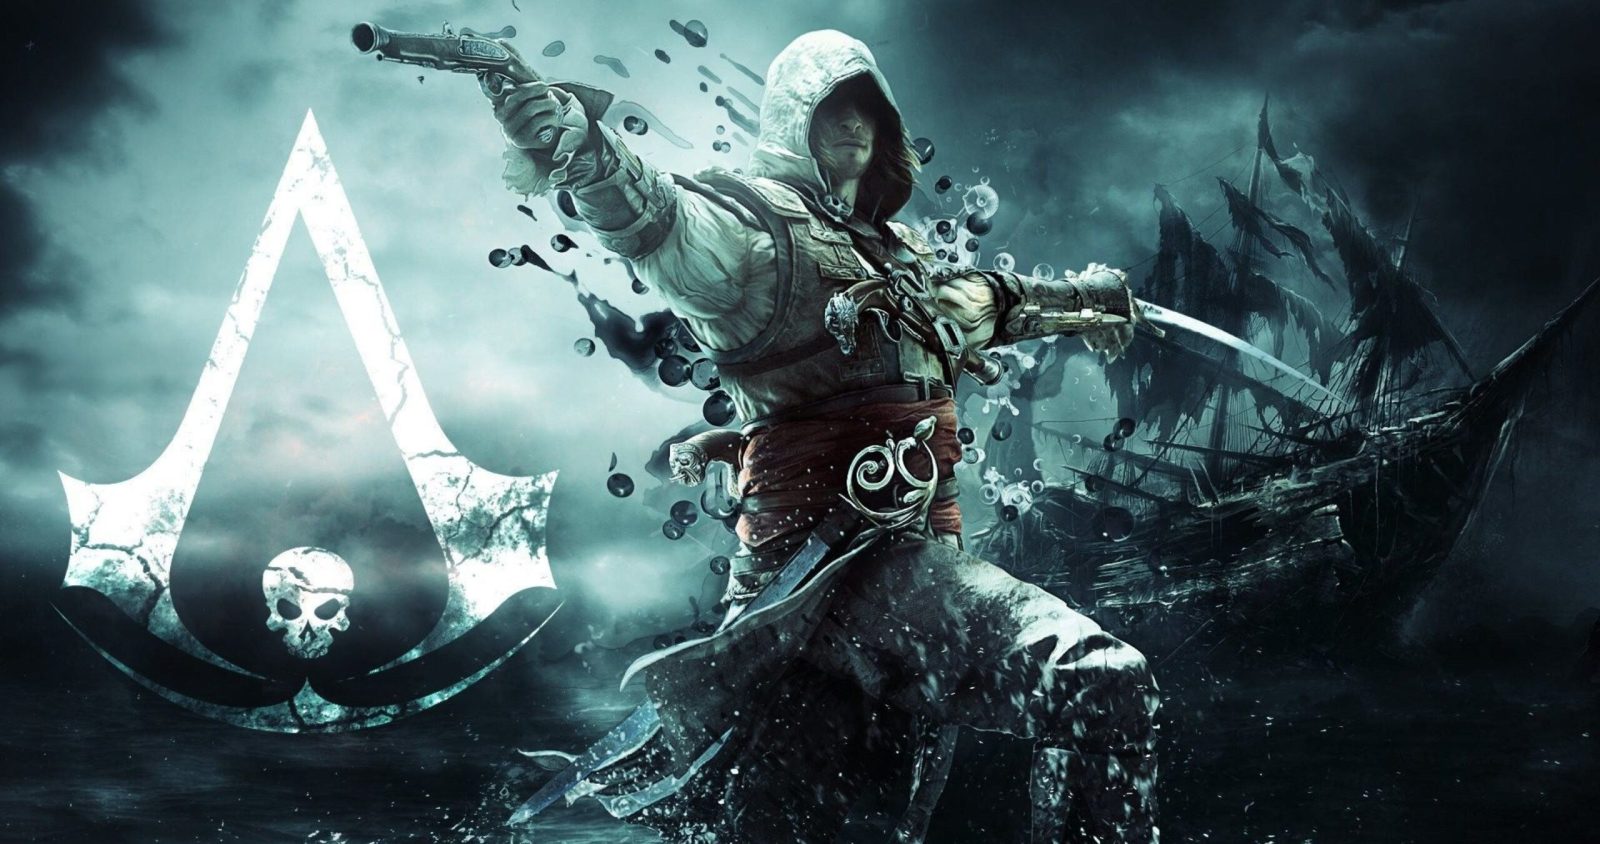 نسخه بعدی Assassin’s Creed یک اسپین آف همانند Far Cry Primal خواهد بود